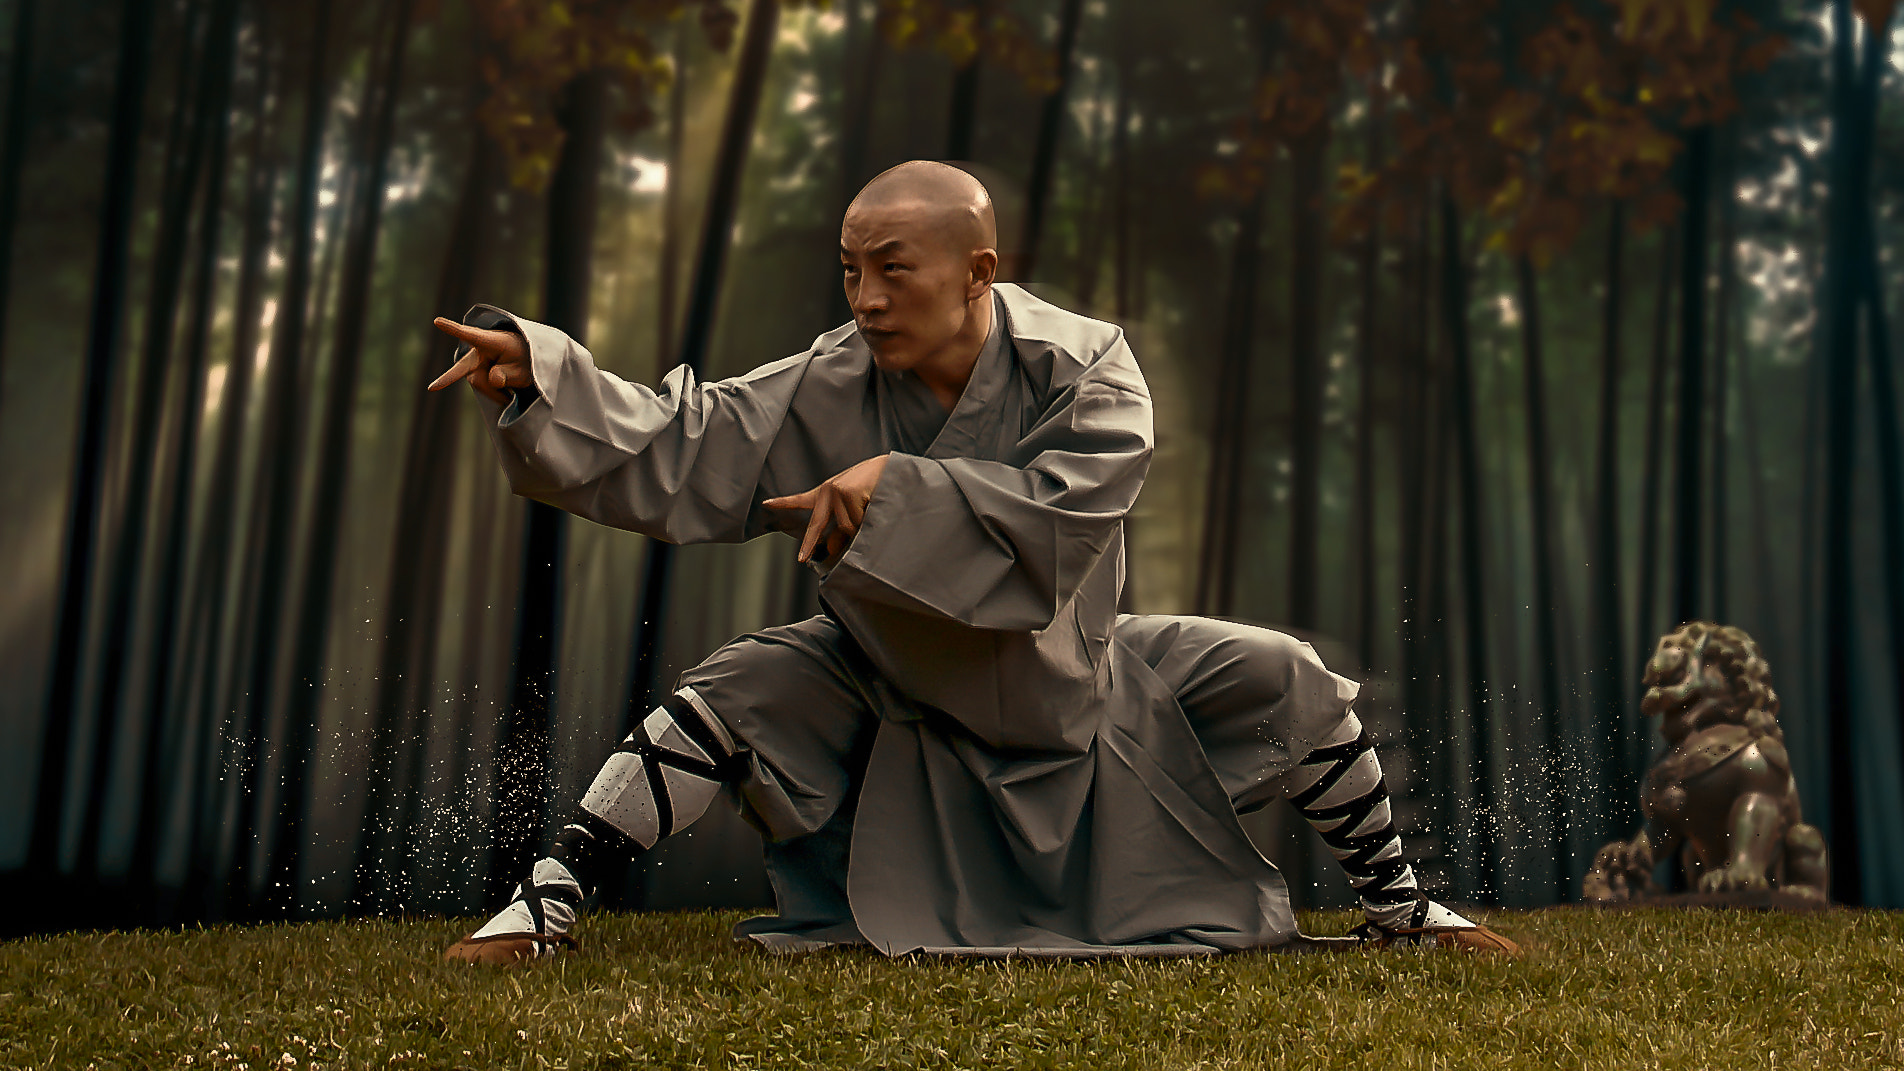 Sony NEX-VG10 sample photo. Shaolin master photography